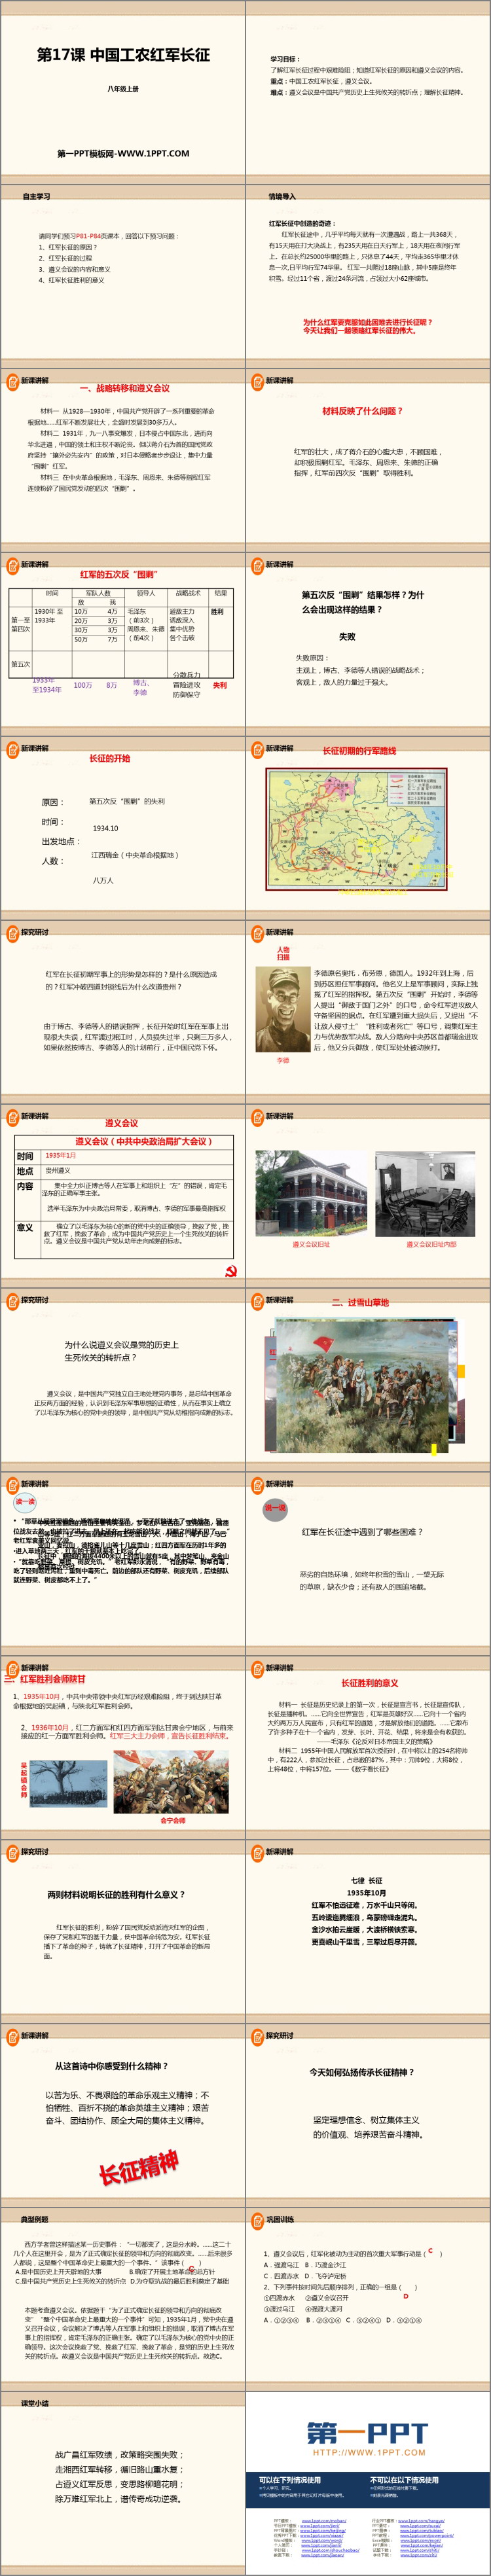 《中国工农红军长征》PPT免费课件-预览图02